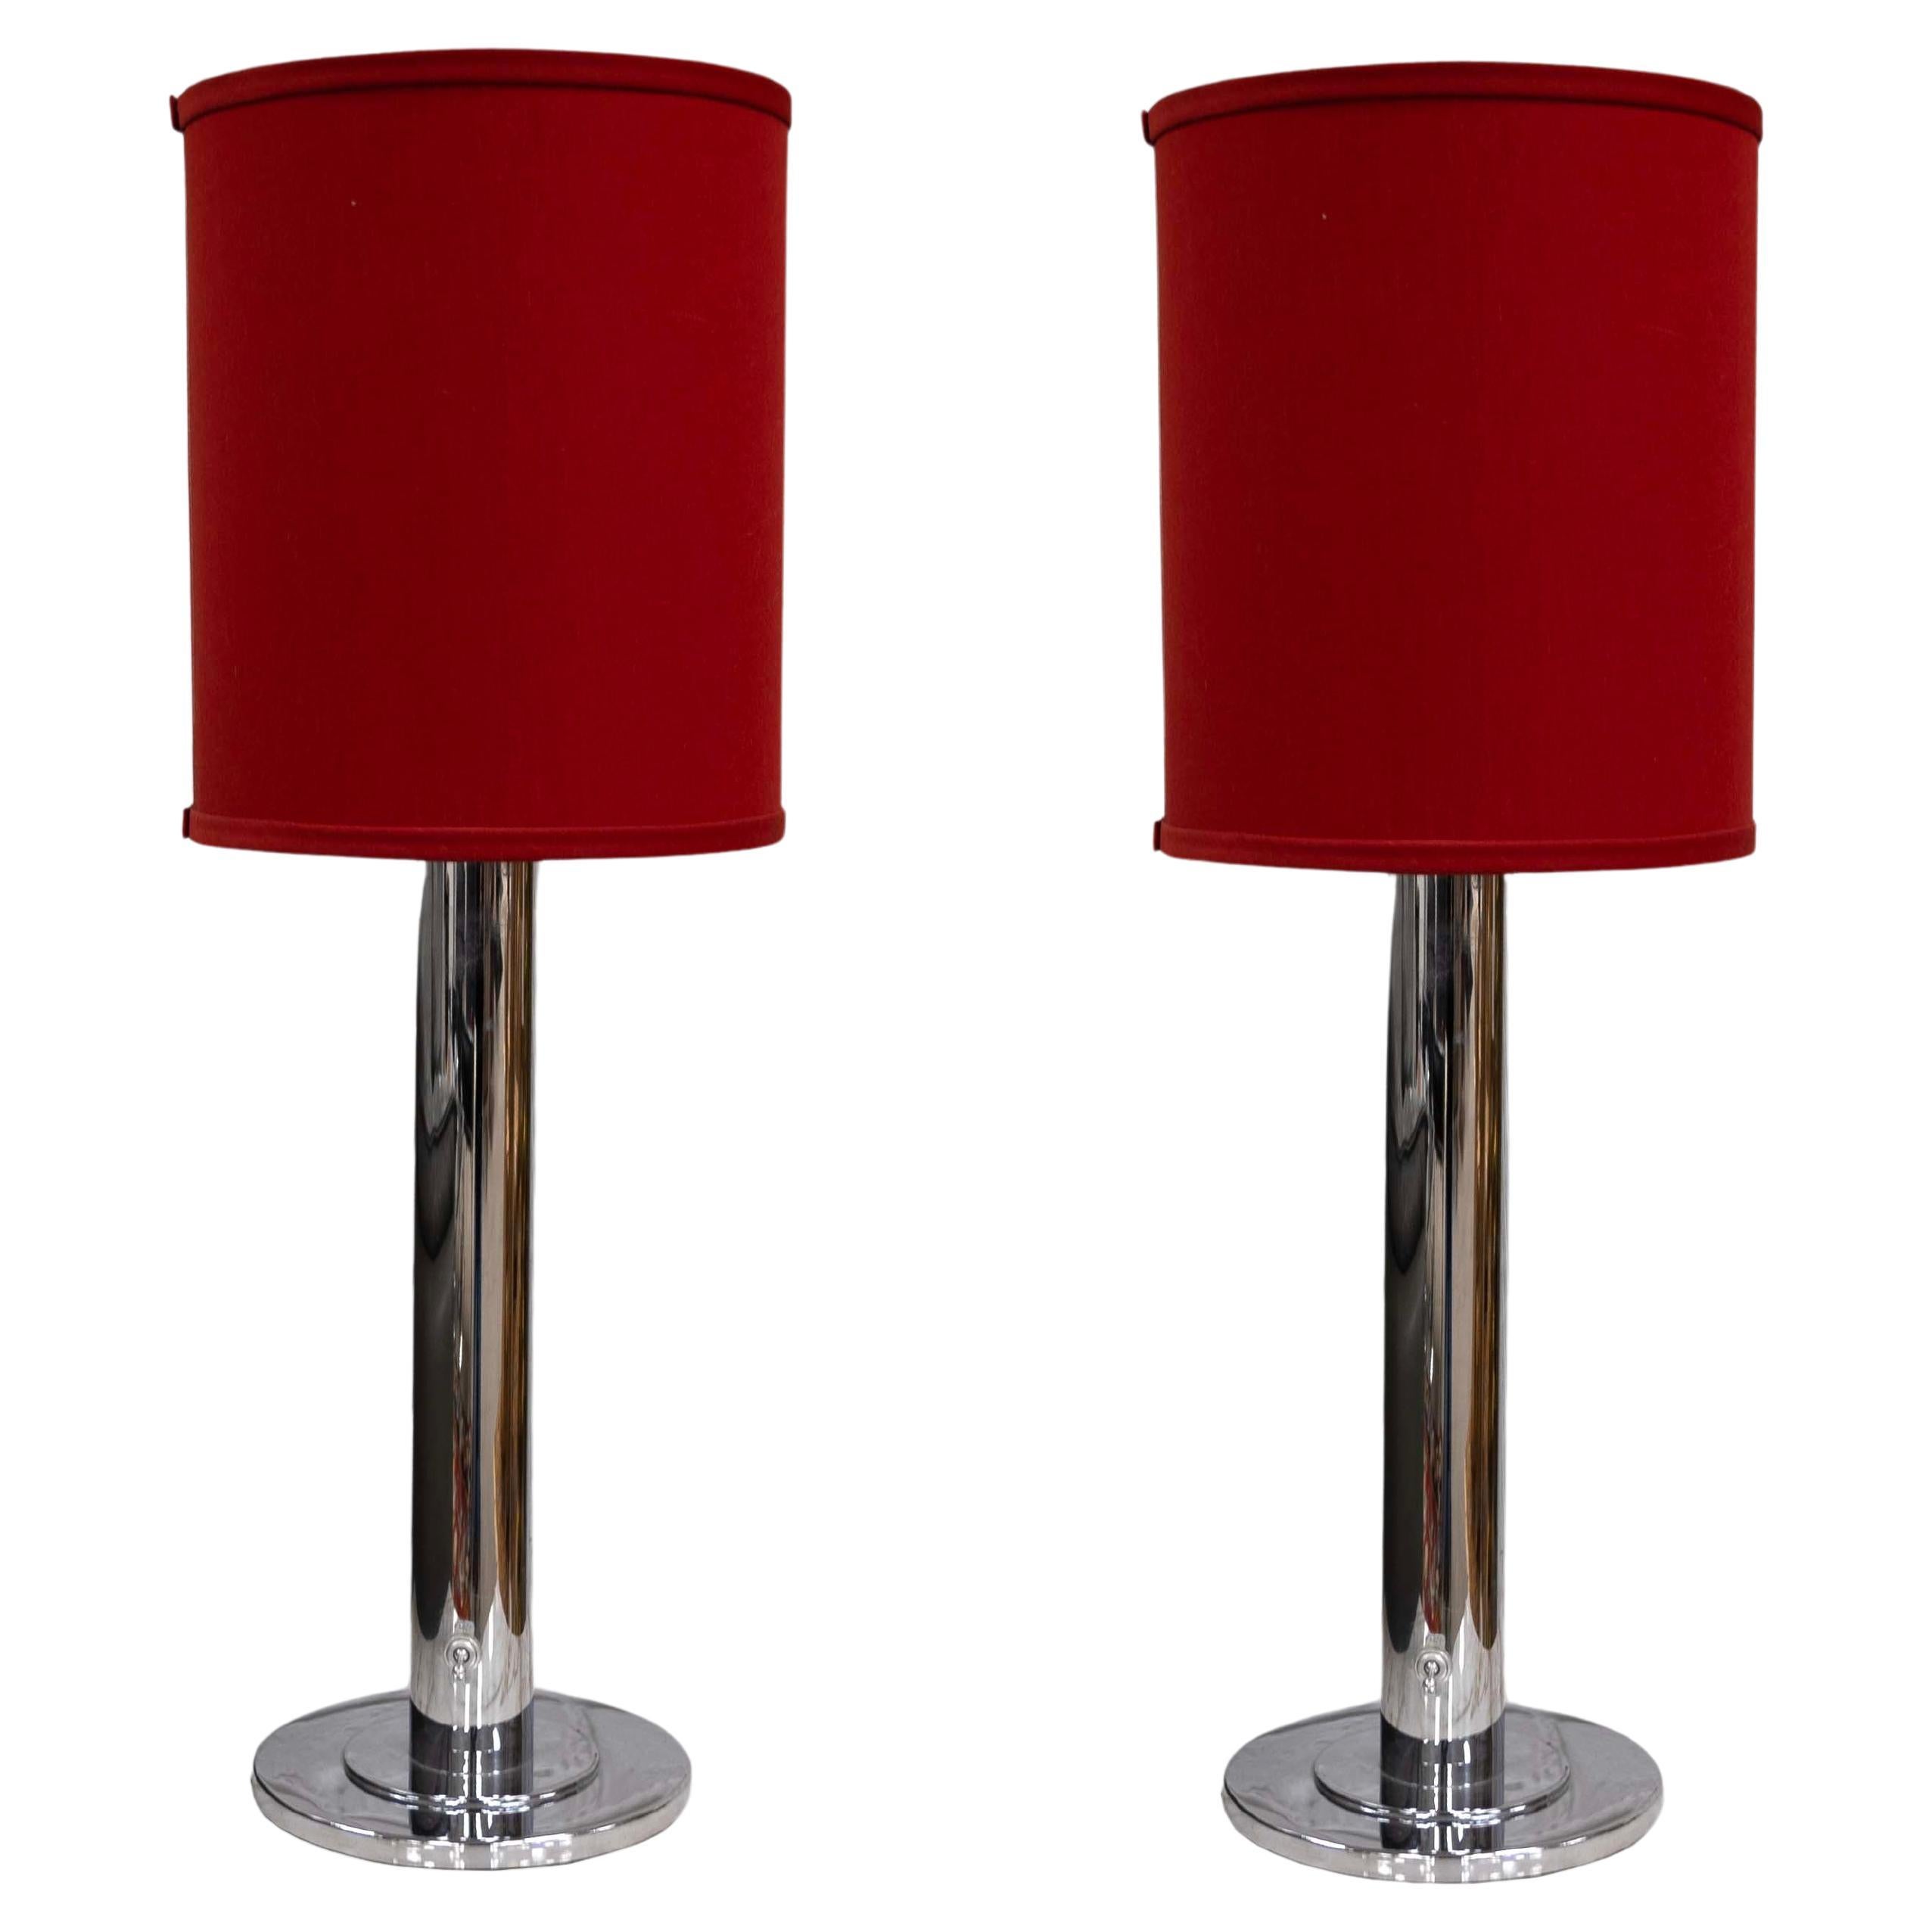 Paire de lampes de table Nessen Lighting en chrome avec abat-jour rouge Modernity Contemporary